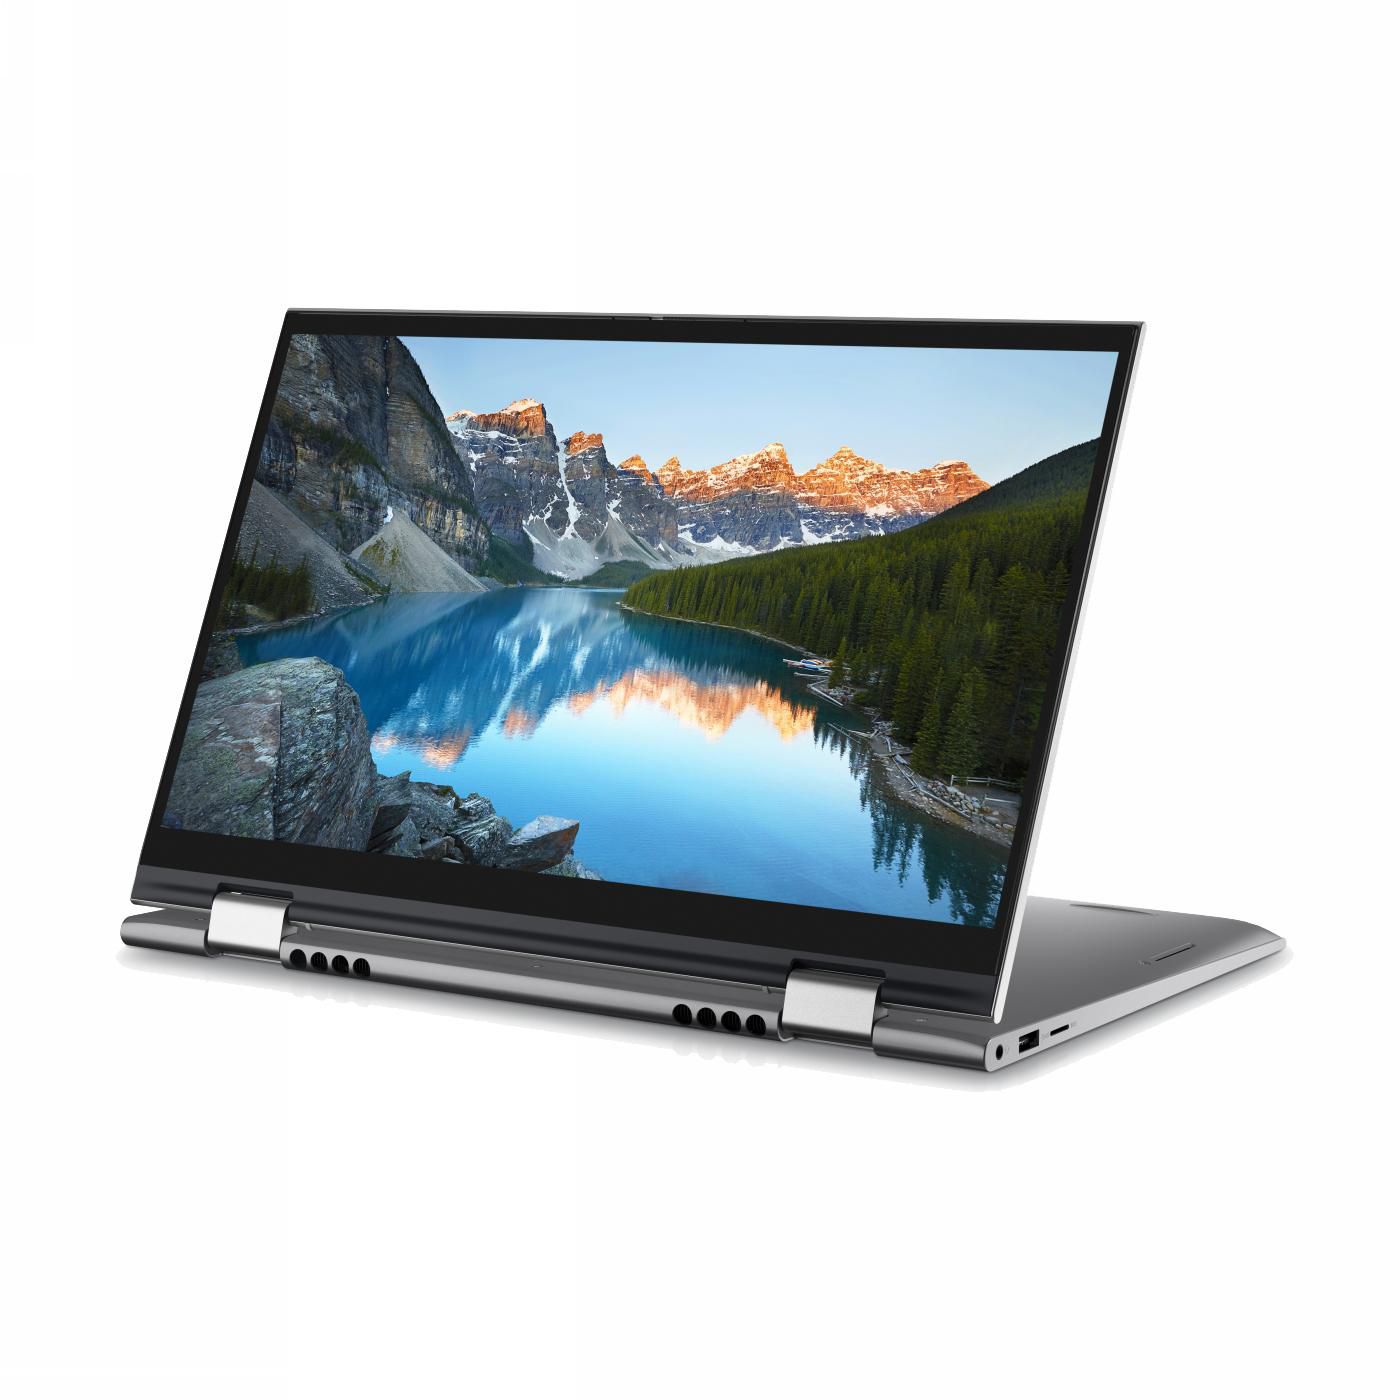 Dell Inspiron 14 5410 2-in-1 Laptop 14” FHD (1920×1080), Intel Core i5-1155G7, Nvidia MX350 2GB GPU, 8GB RAM, 512GB NVMe SSD, English/Arabic Backlit Keyboard, Windows 11, 1 Year Warranty